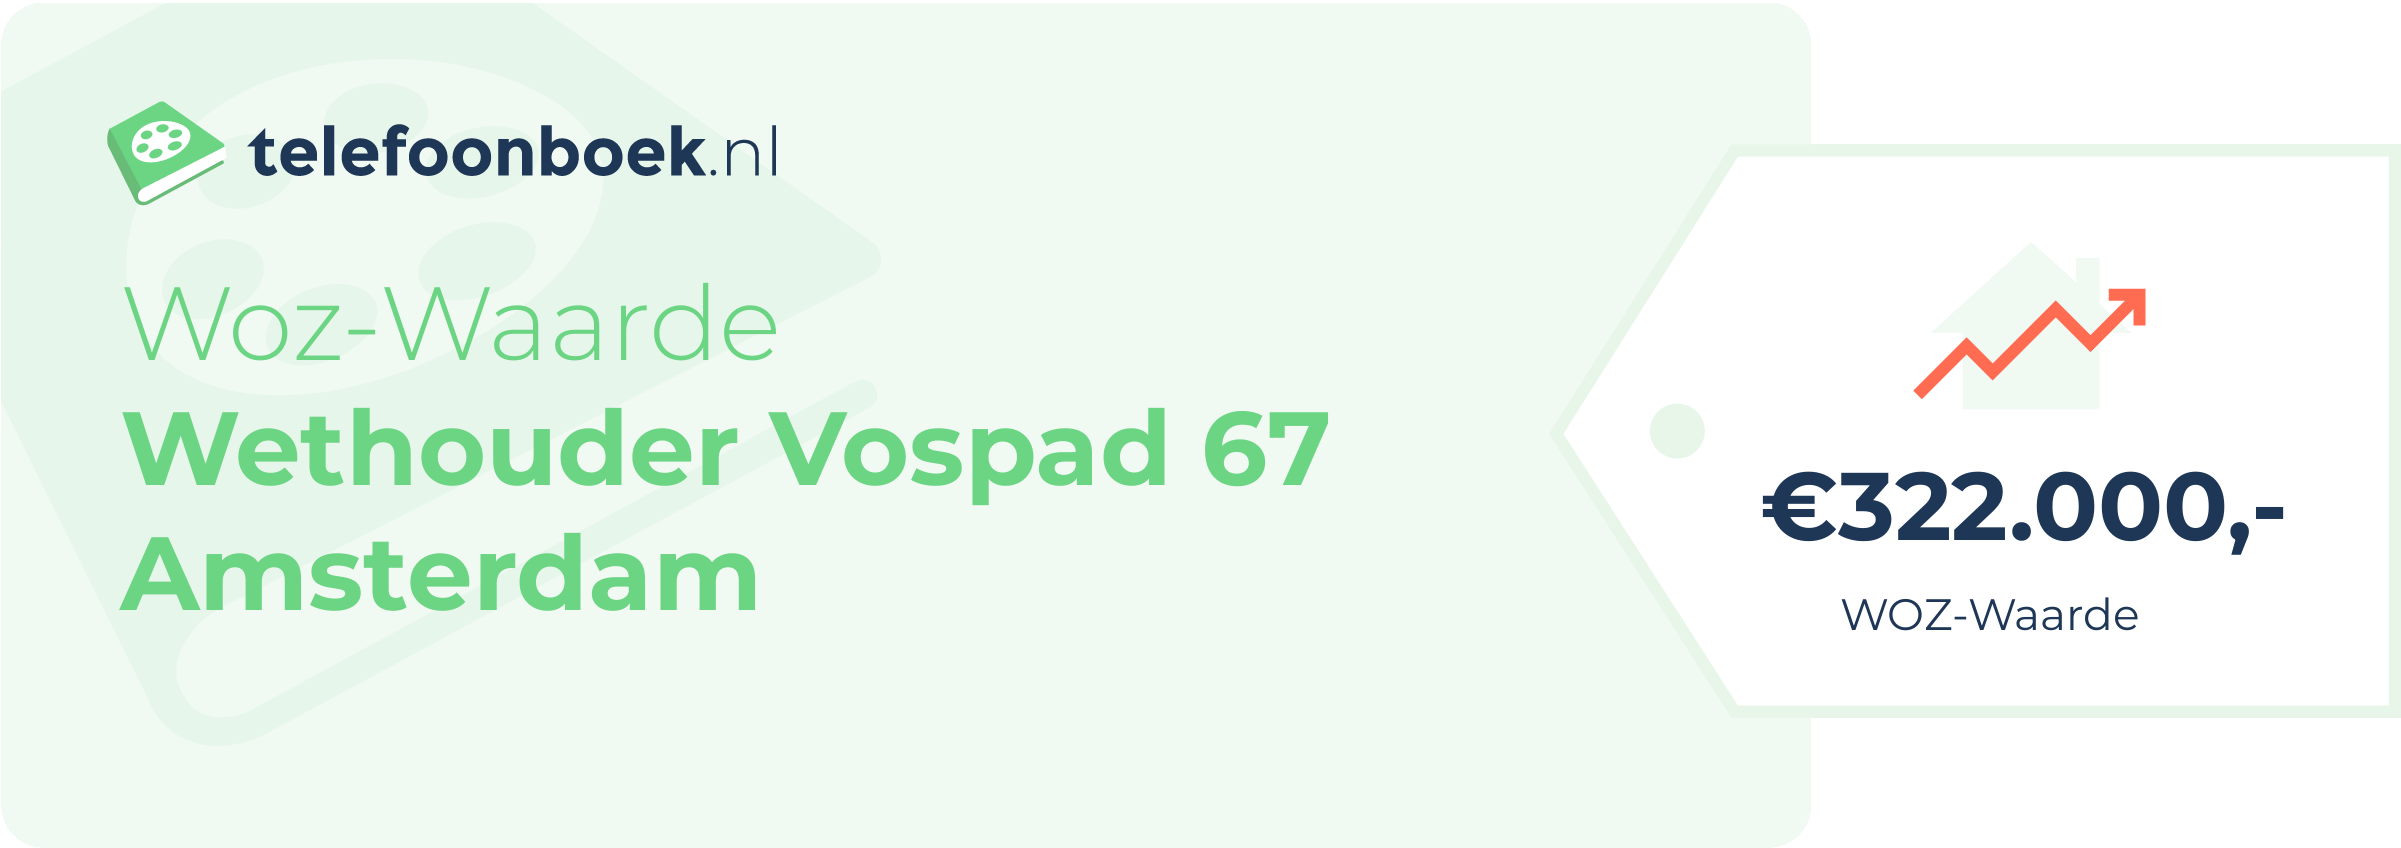 WOZ-waarde Wethouder Vospad 67 Amsterdam